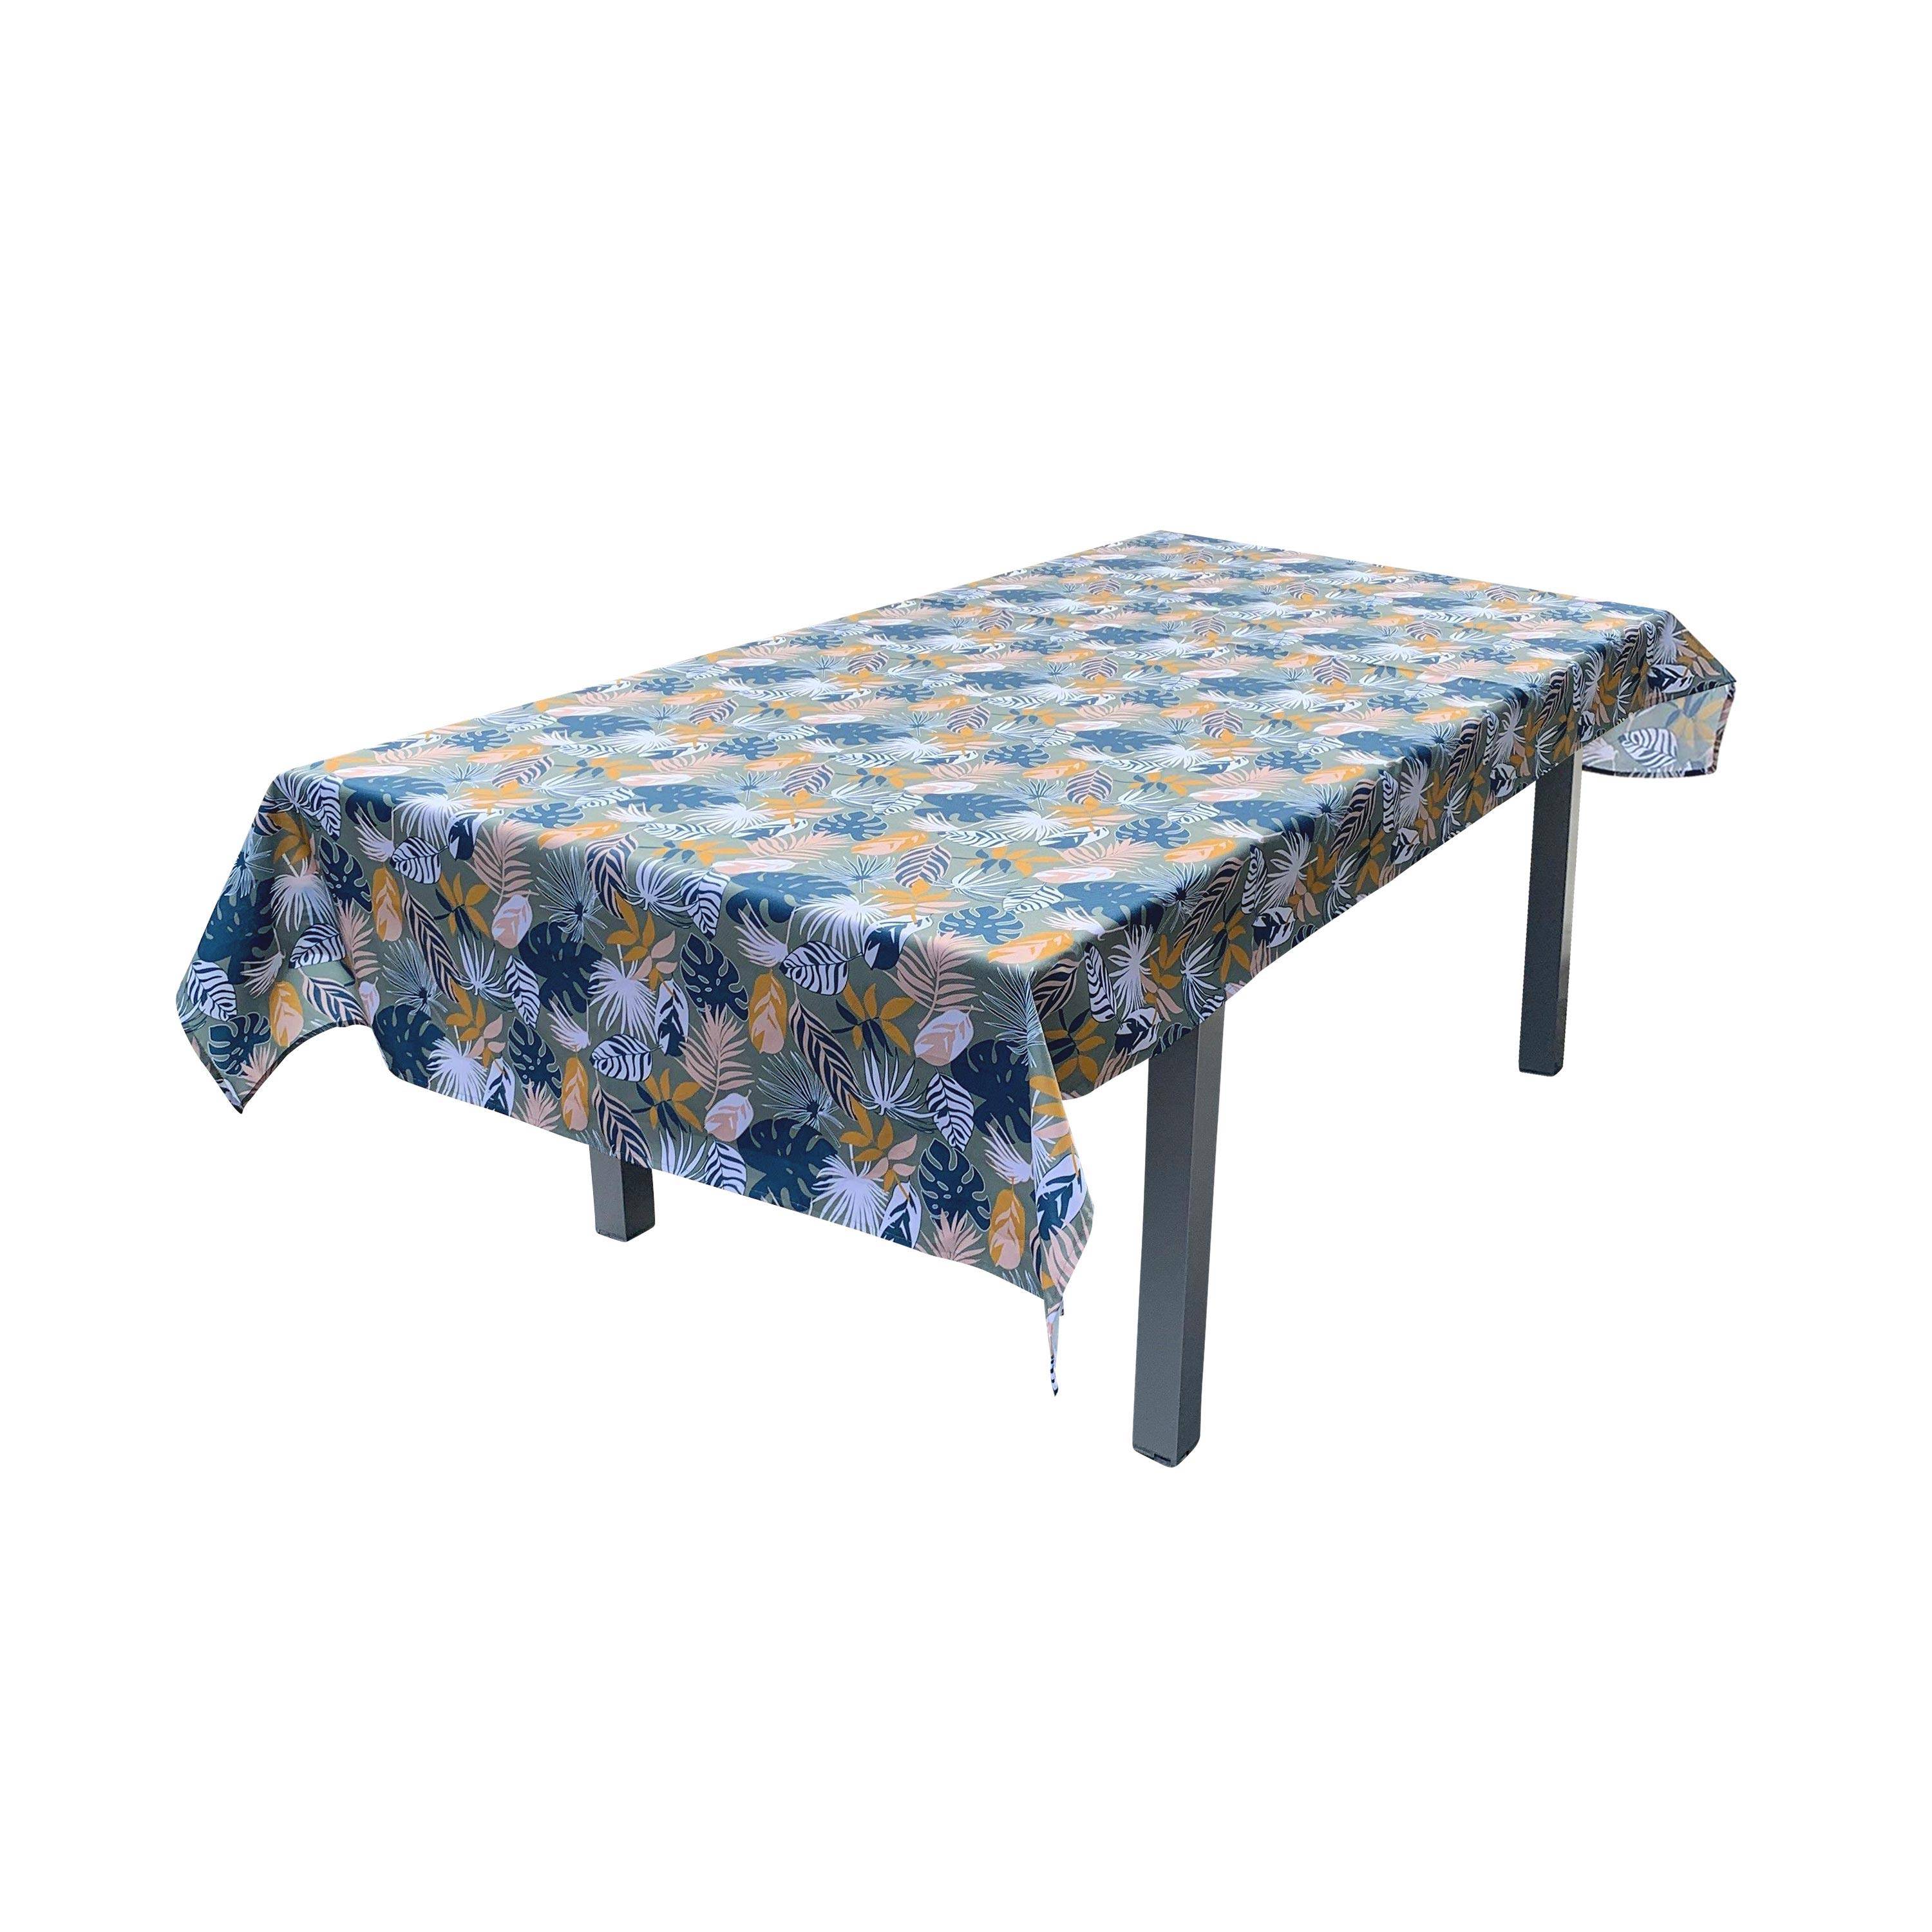 Kollektion EXOTIQUE - Outdoor-Tischdecke 140 x 240 cm exotisches Muster, 100% Polyester, schützt den Tisch, UV-Schutz, sommerlicher Stil Photo1